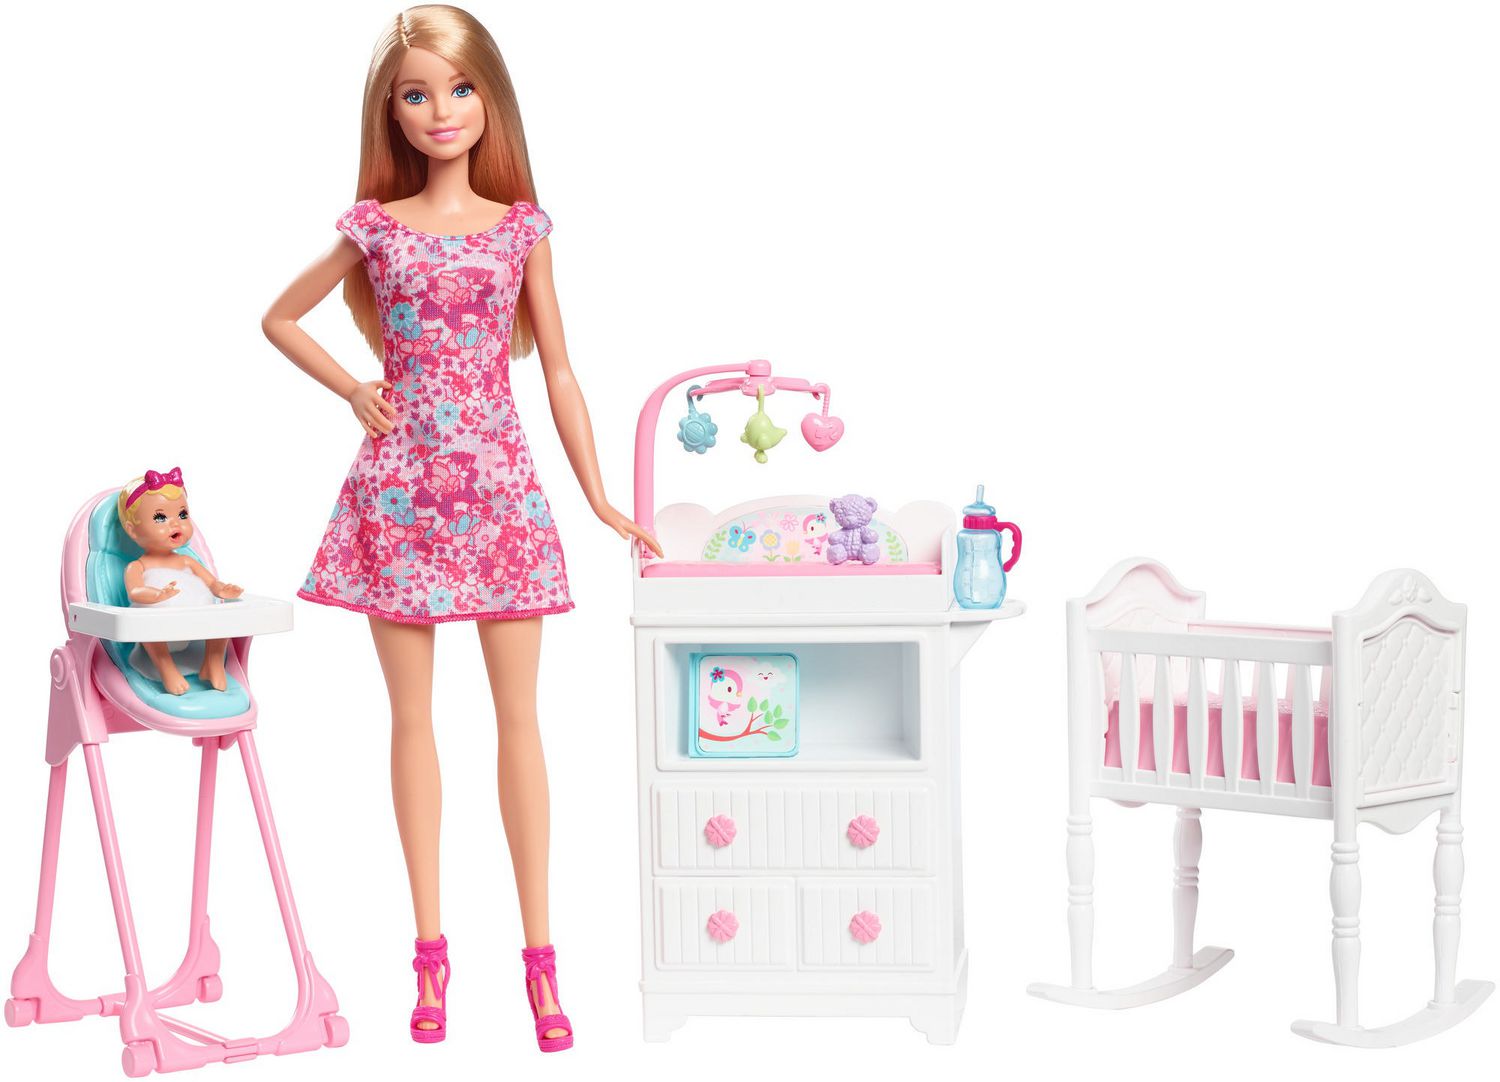 Барби 8 лет. Барби няня Скиппер с кроватками и пеленальным столиком. Барби няня и детский стульчик. Кукла Скиппер. Кукла Барби.